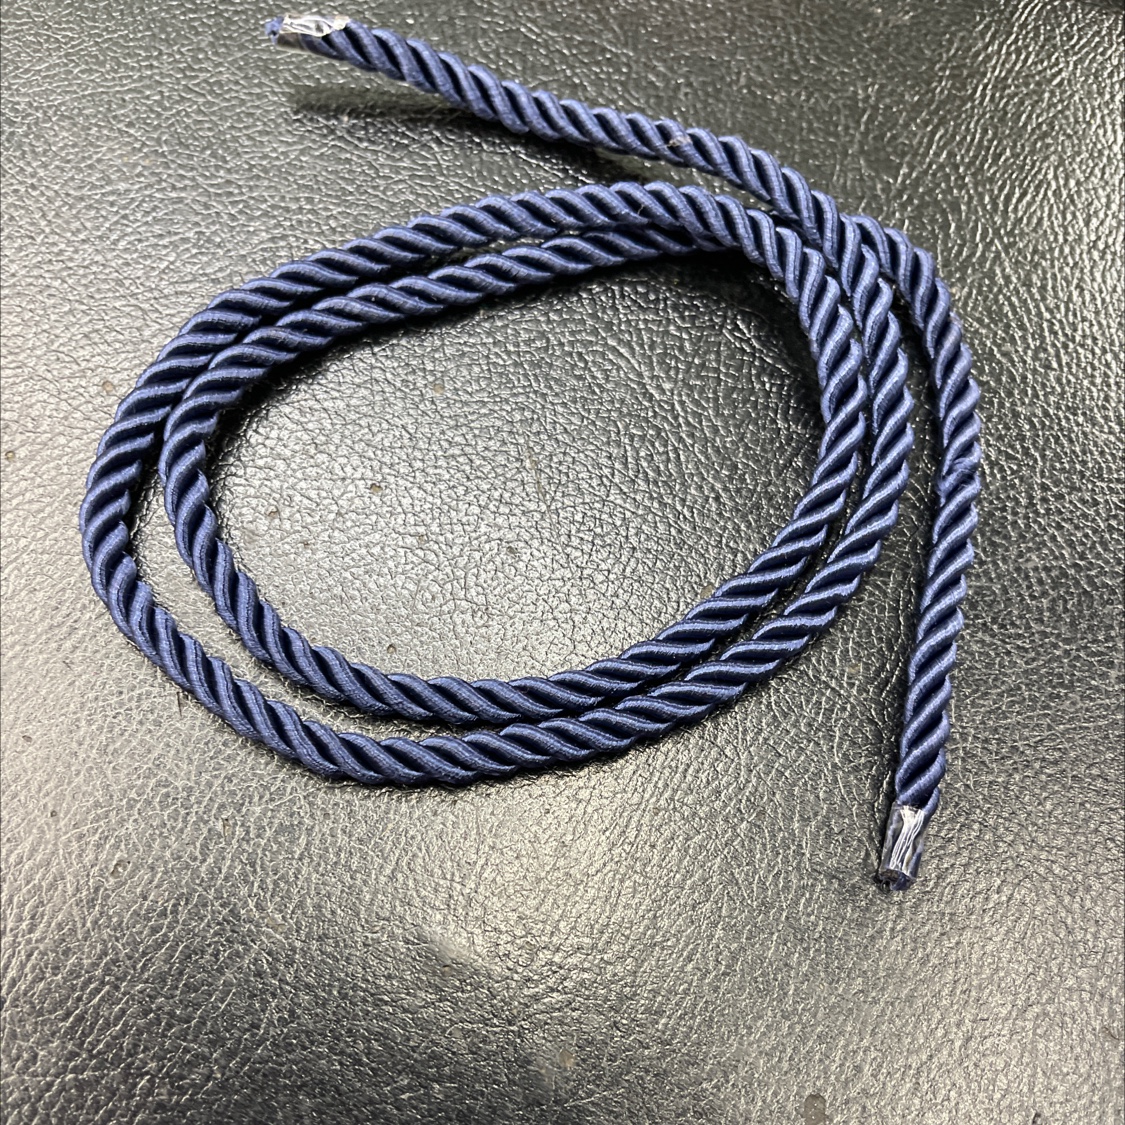 供应5mm藏青色三股绳子、扭绳、家纺服装辅料产品图